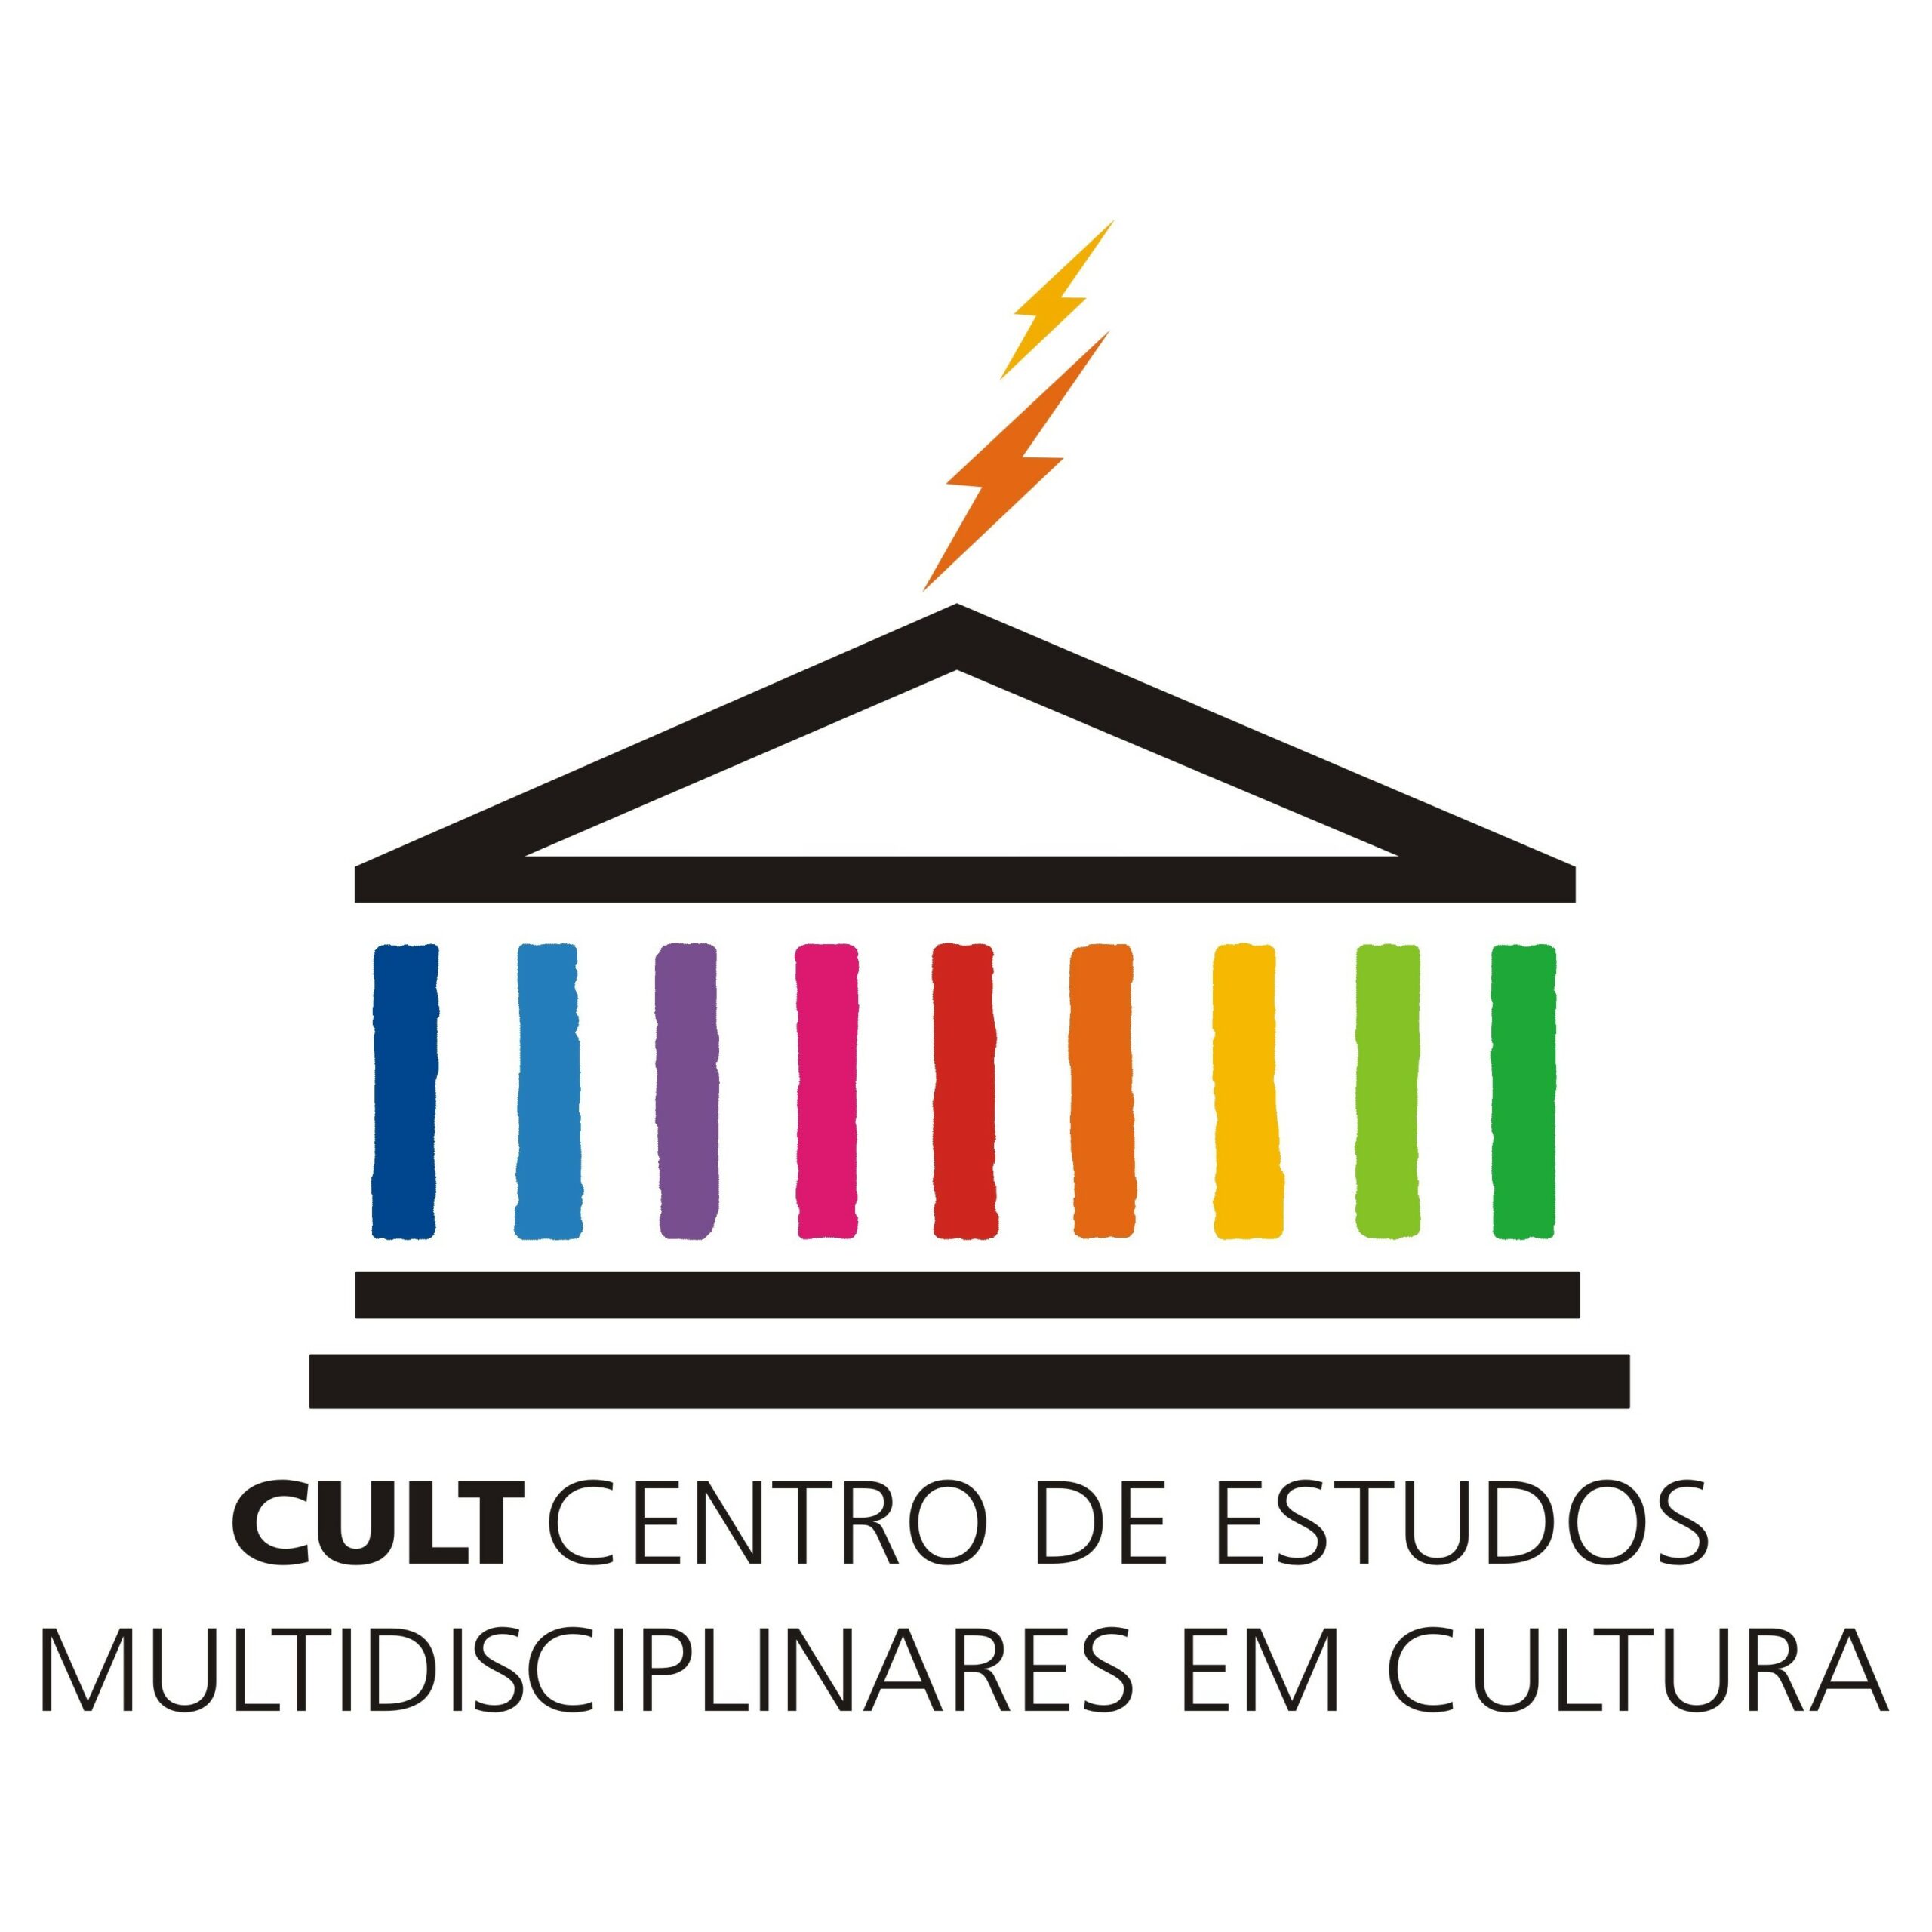 XII Ciclo de Debates sobre Políticas Culturais acontece em março/2023 na FACOM